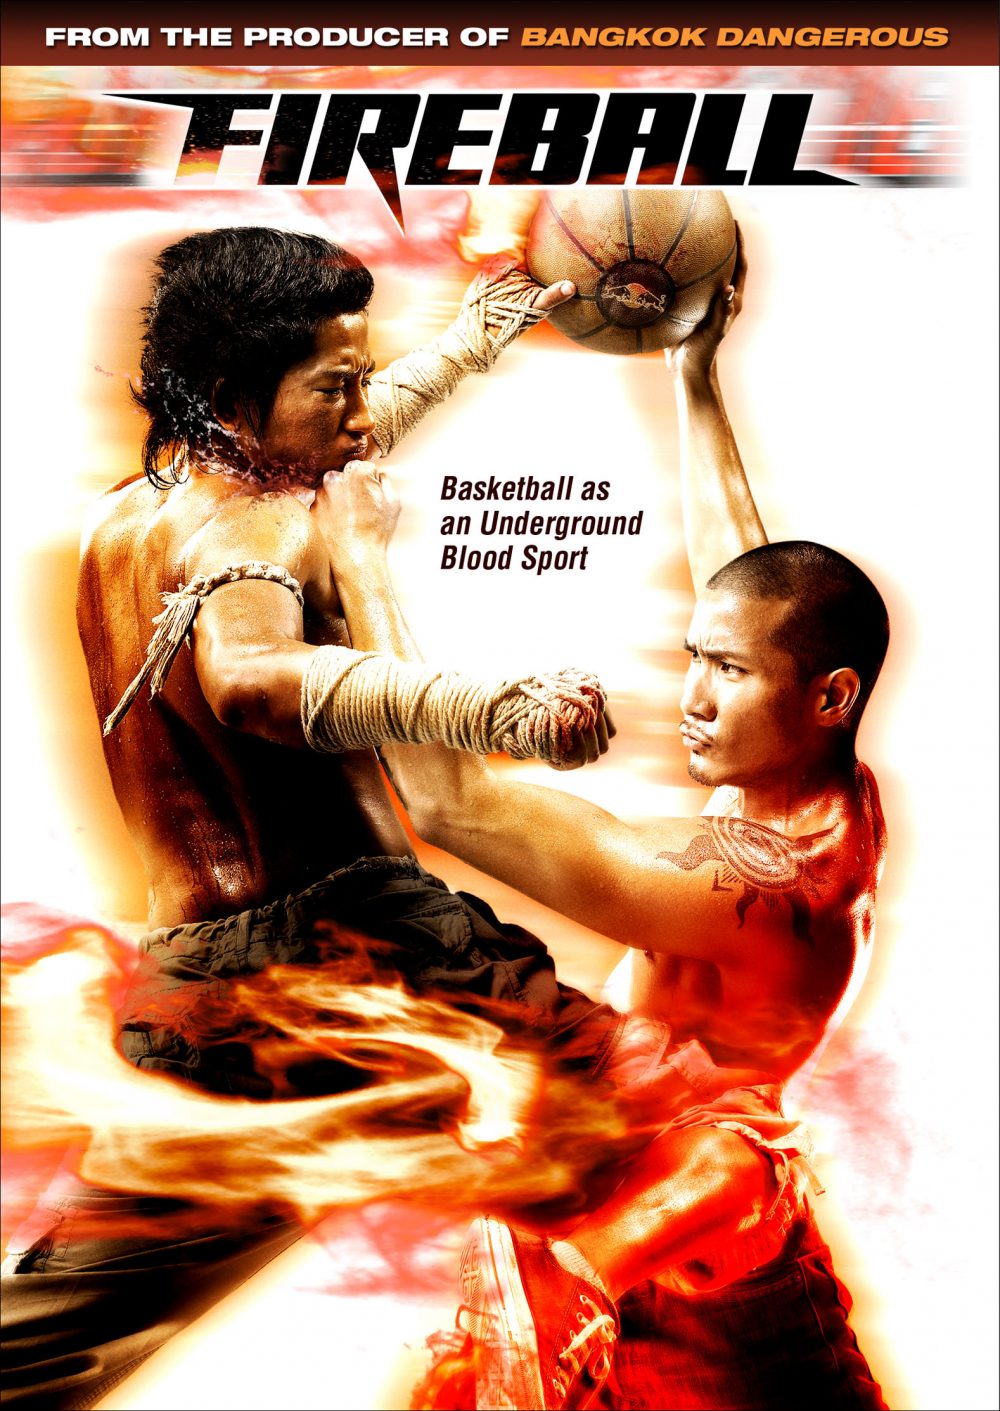 Phim hành động võ thuật Thái Lan hay nhất: Quyền thủ Thái Lan - Fireball (2009)